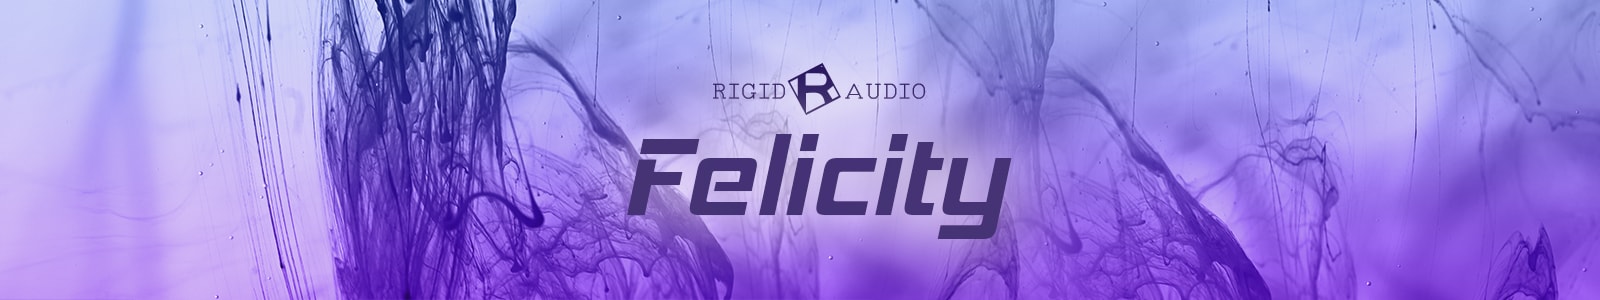 felicity by rigid audio